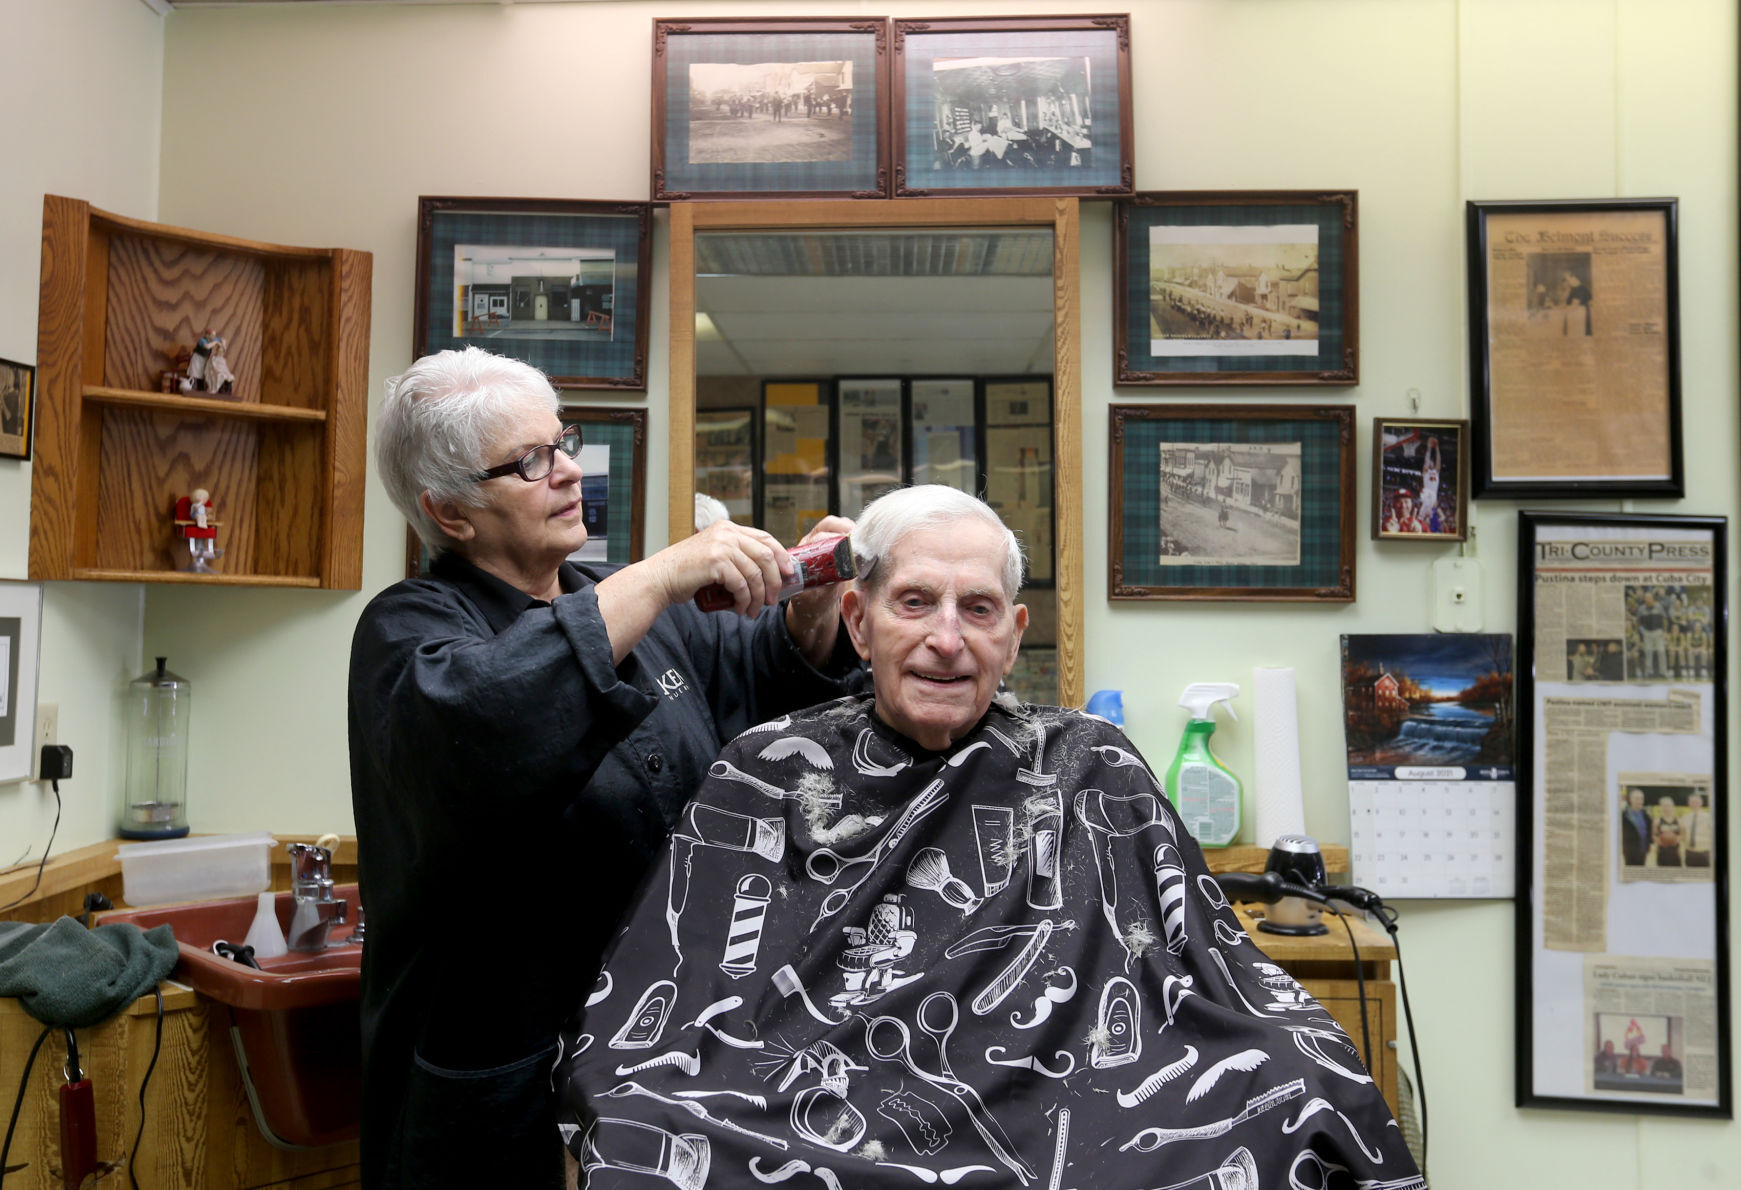 Joanie Von Glahn cuts hair for Merle Curtis, of Cuba City, Wis., at Joanie